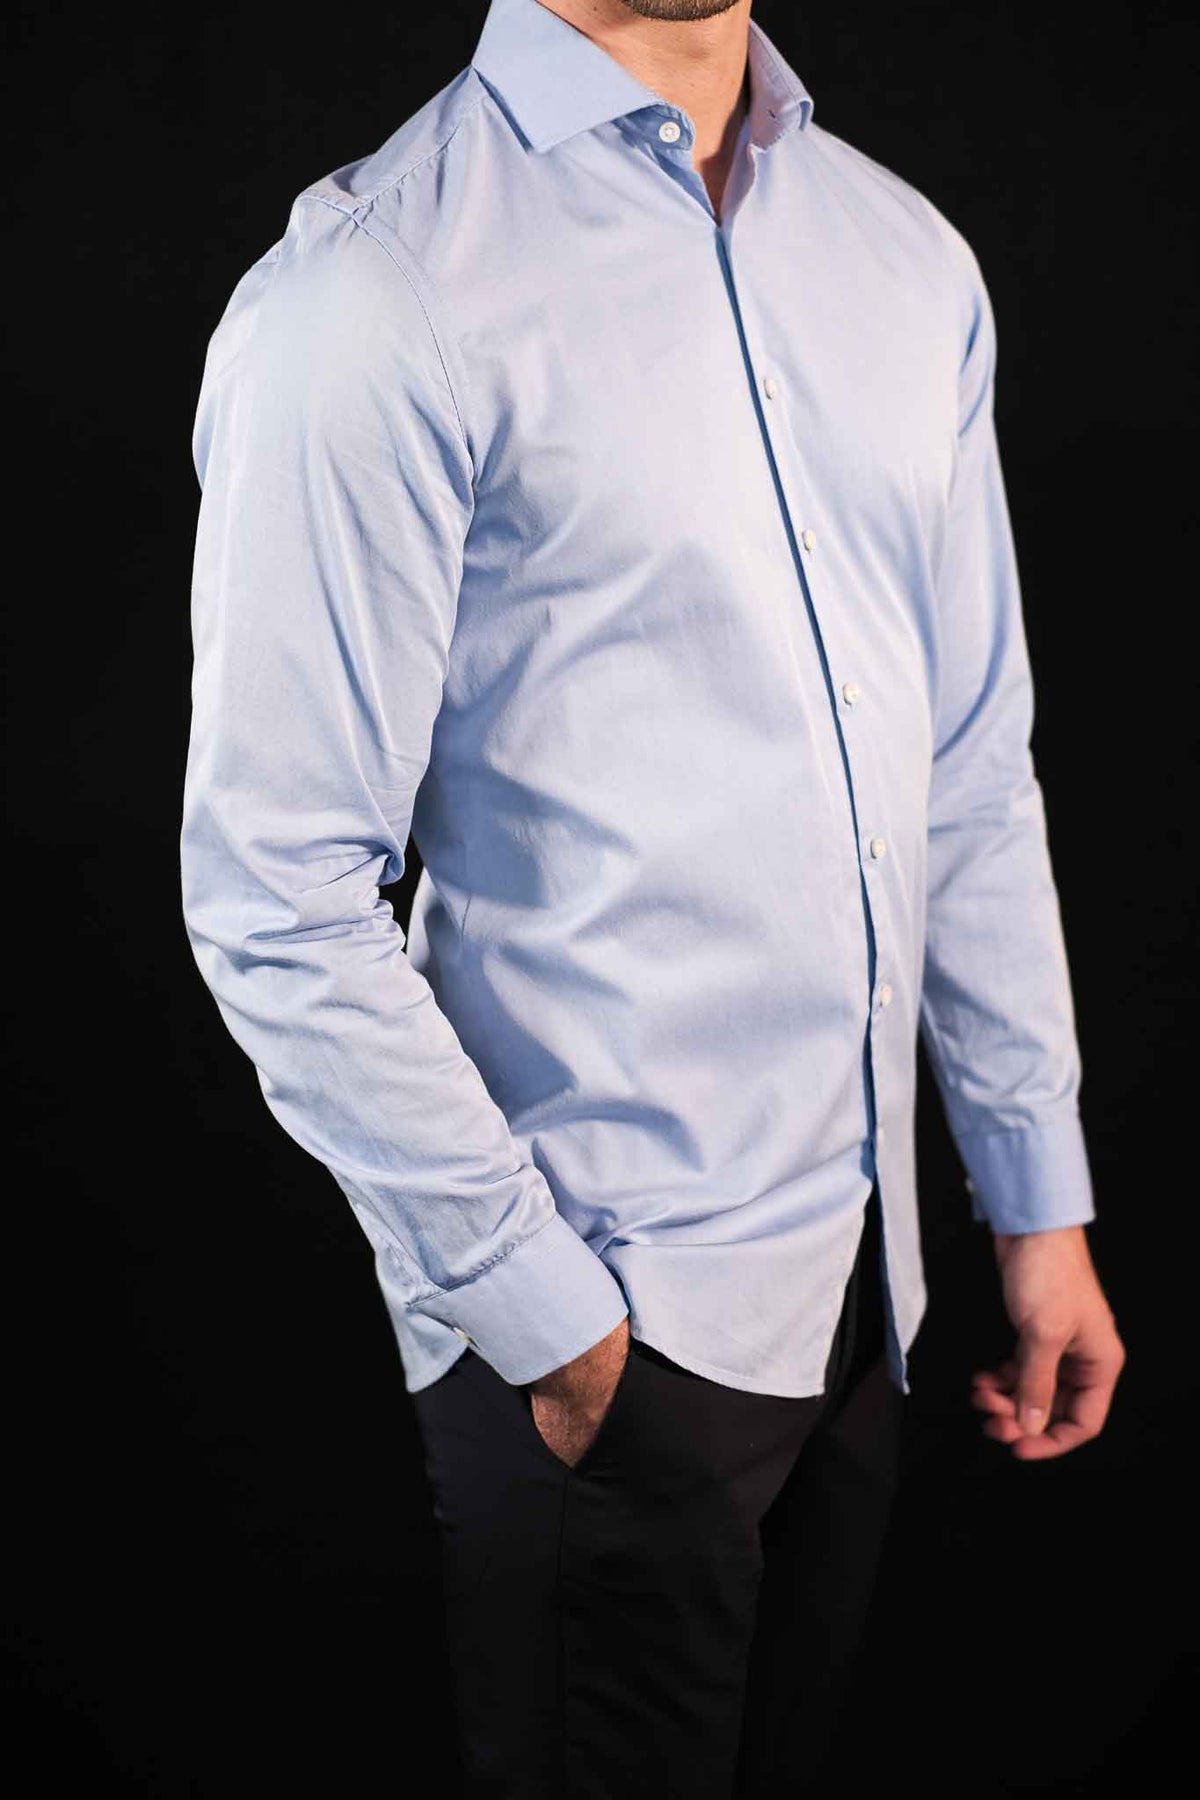 High Quality Twill Shirt Medium Blue Modern Fit (Straight Cut)